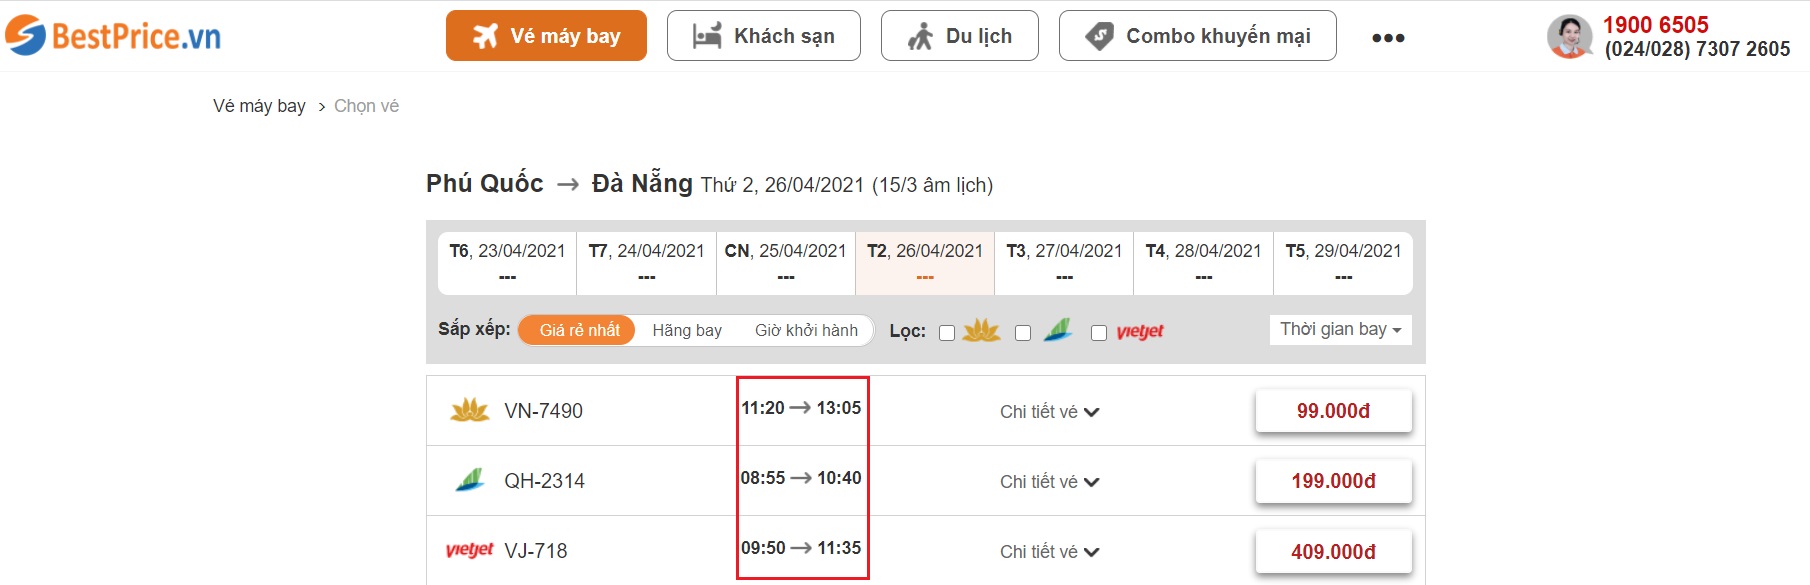 Đặt vé máy bay giá rẻ Phú Quốc đi Đà Nẵng tại website bestprice.vn